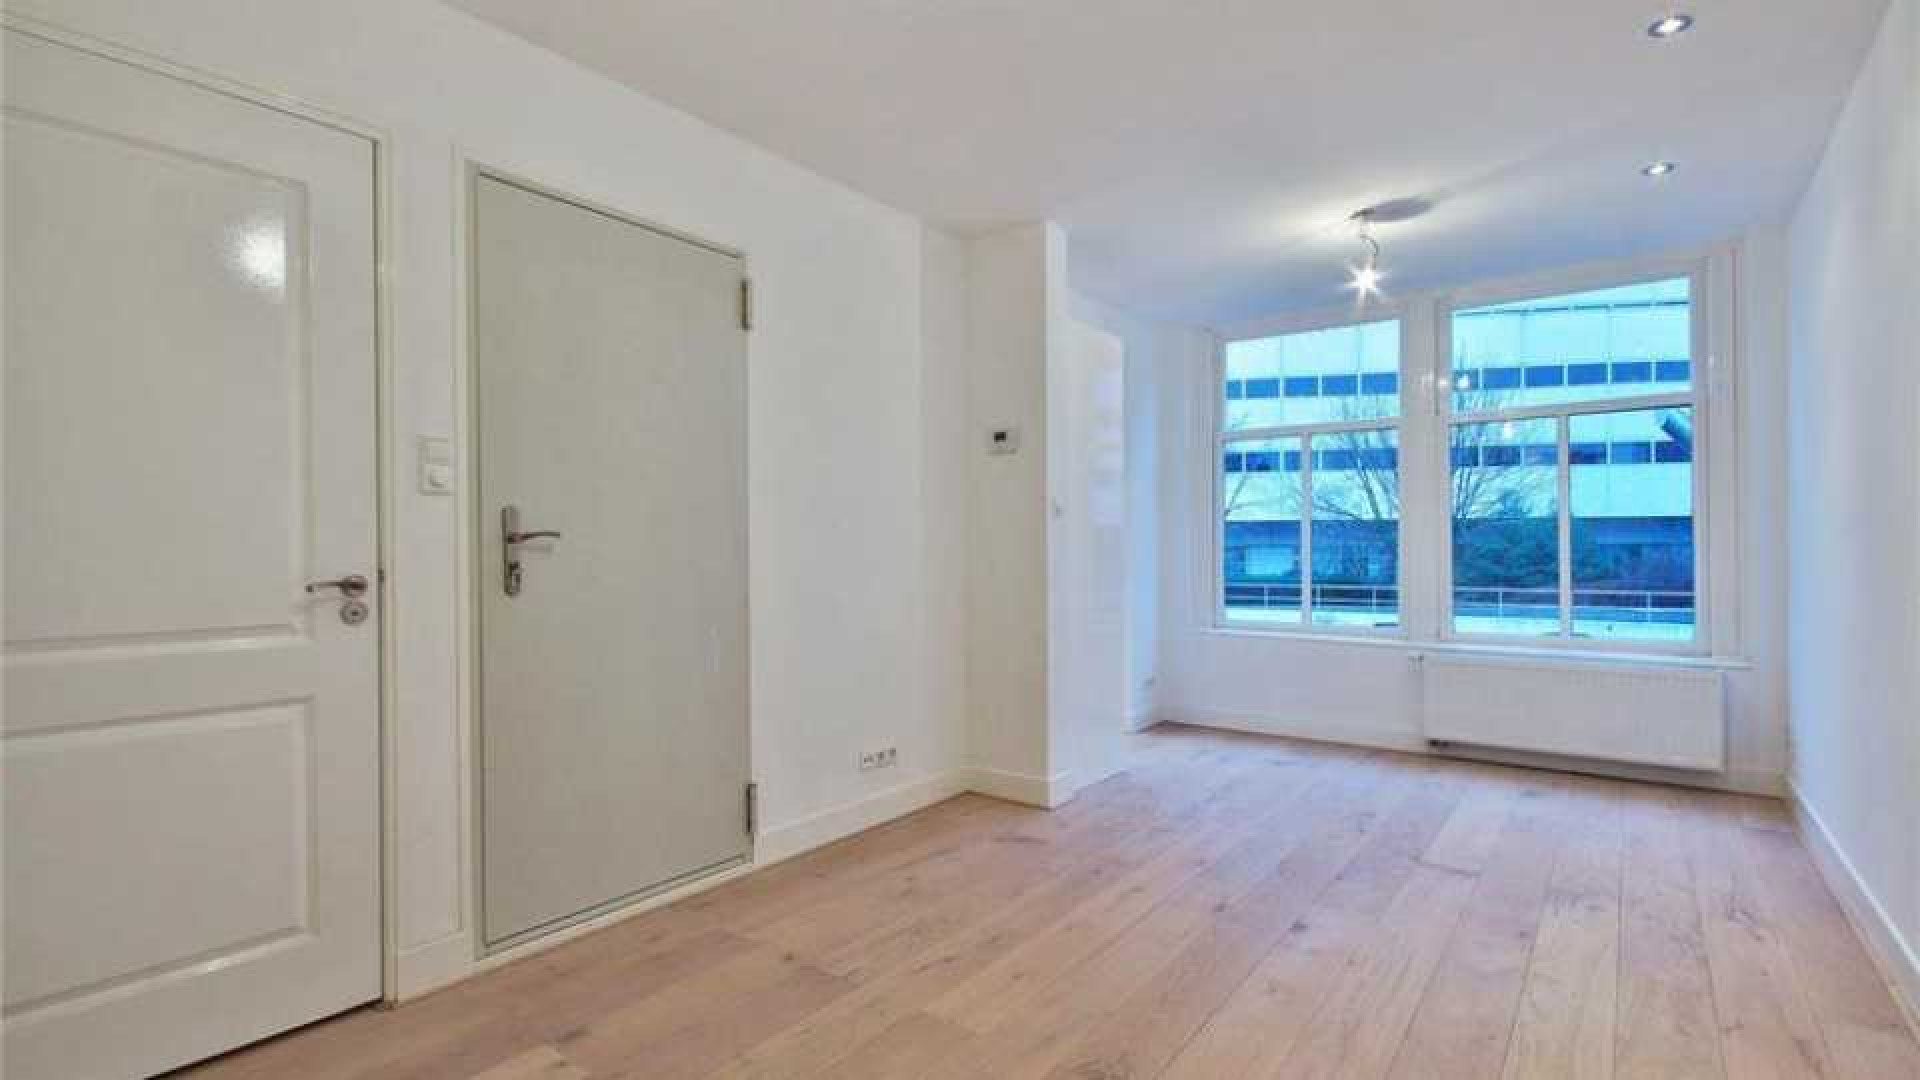 Bondscoach Danny Blind koopt appartement met uitzicht op de Amstel. Zie foto's 5